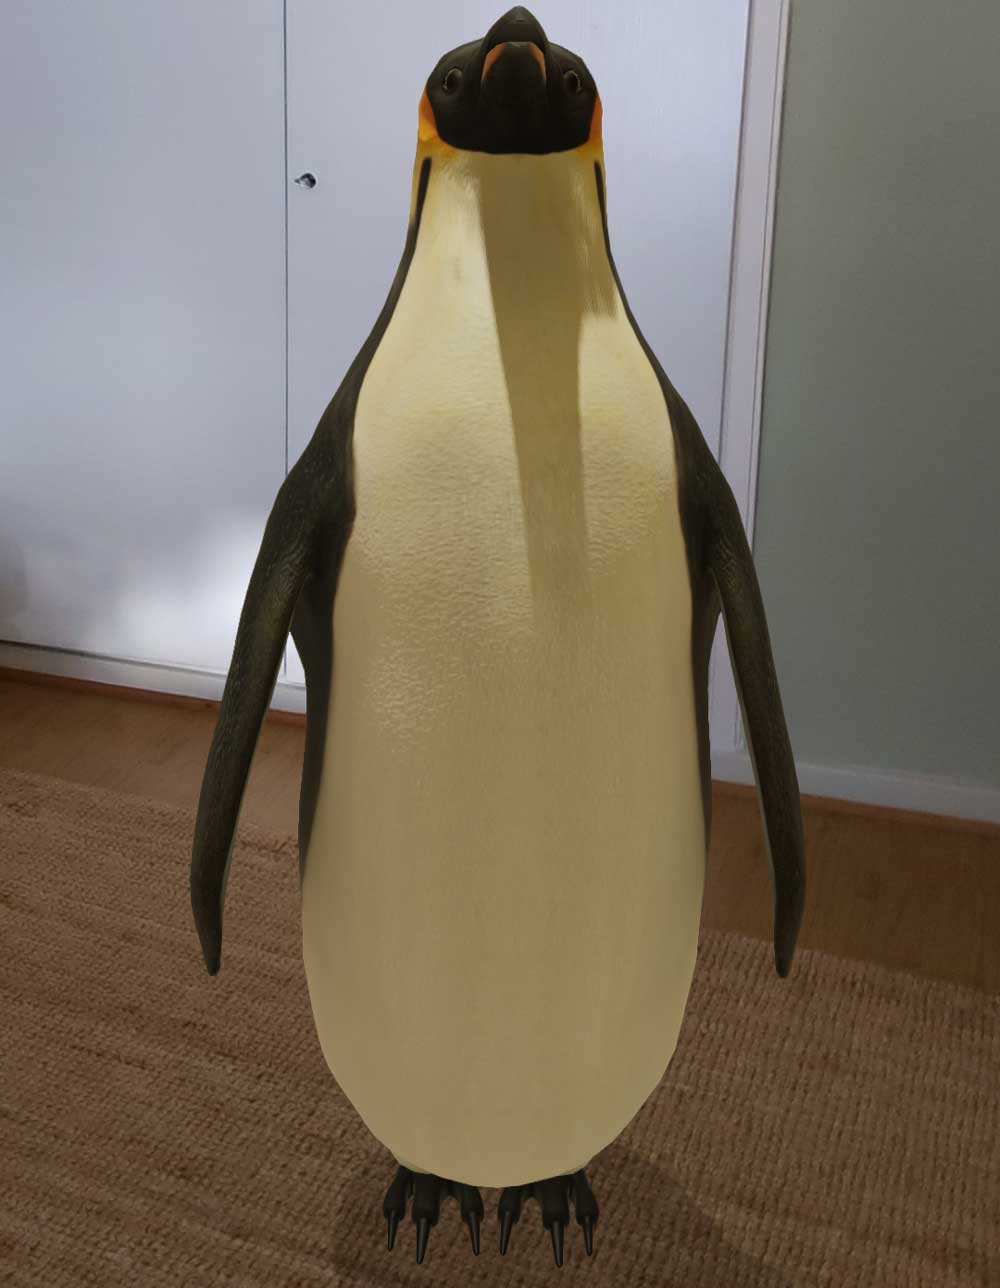 Überraschenderweise ist das lebensgroße Modell eines Pinguins ähnlich furchteinflößend wie das der Königspython. Bild: Eigener Screenshot